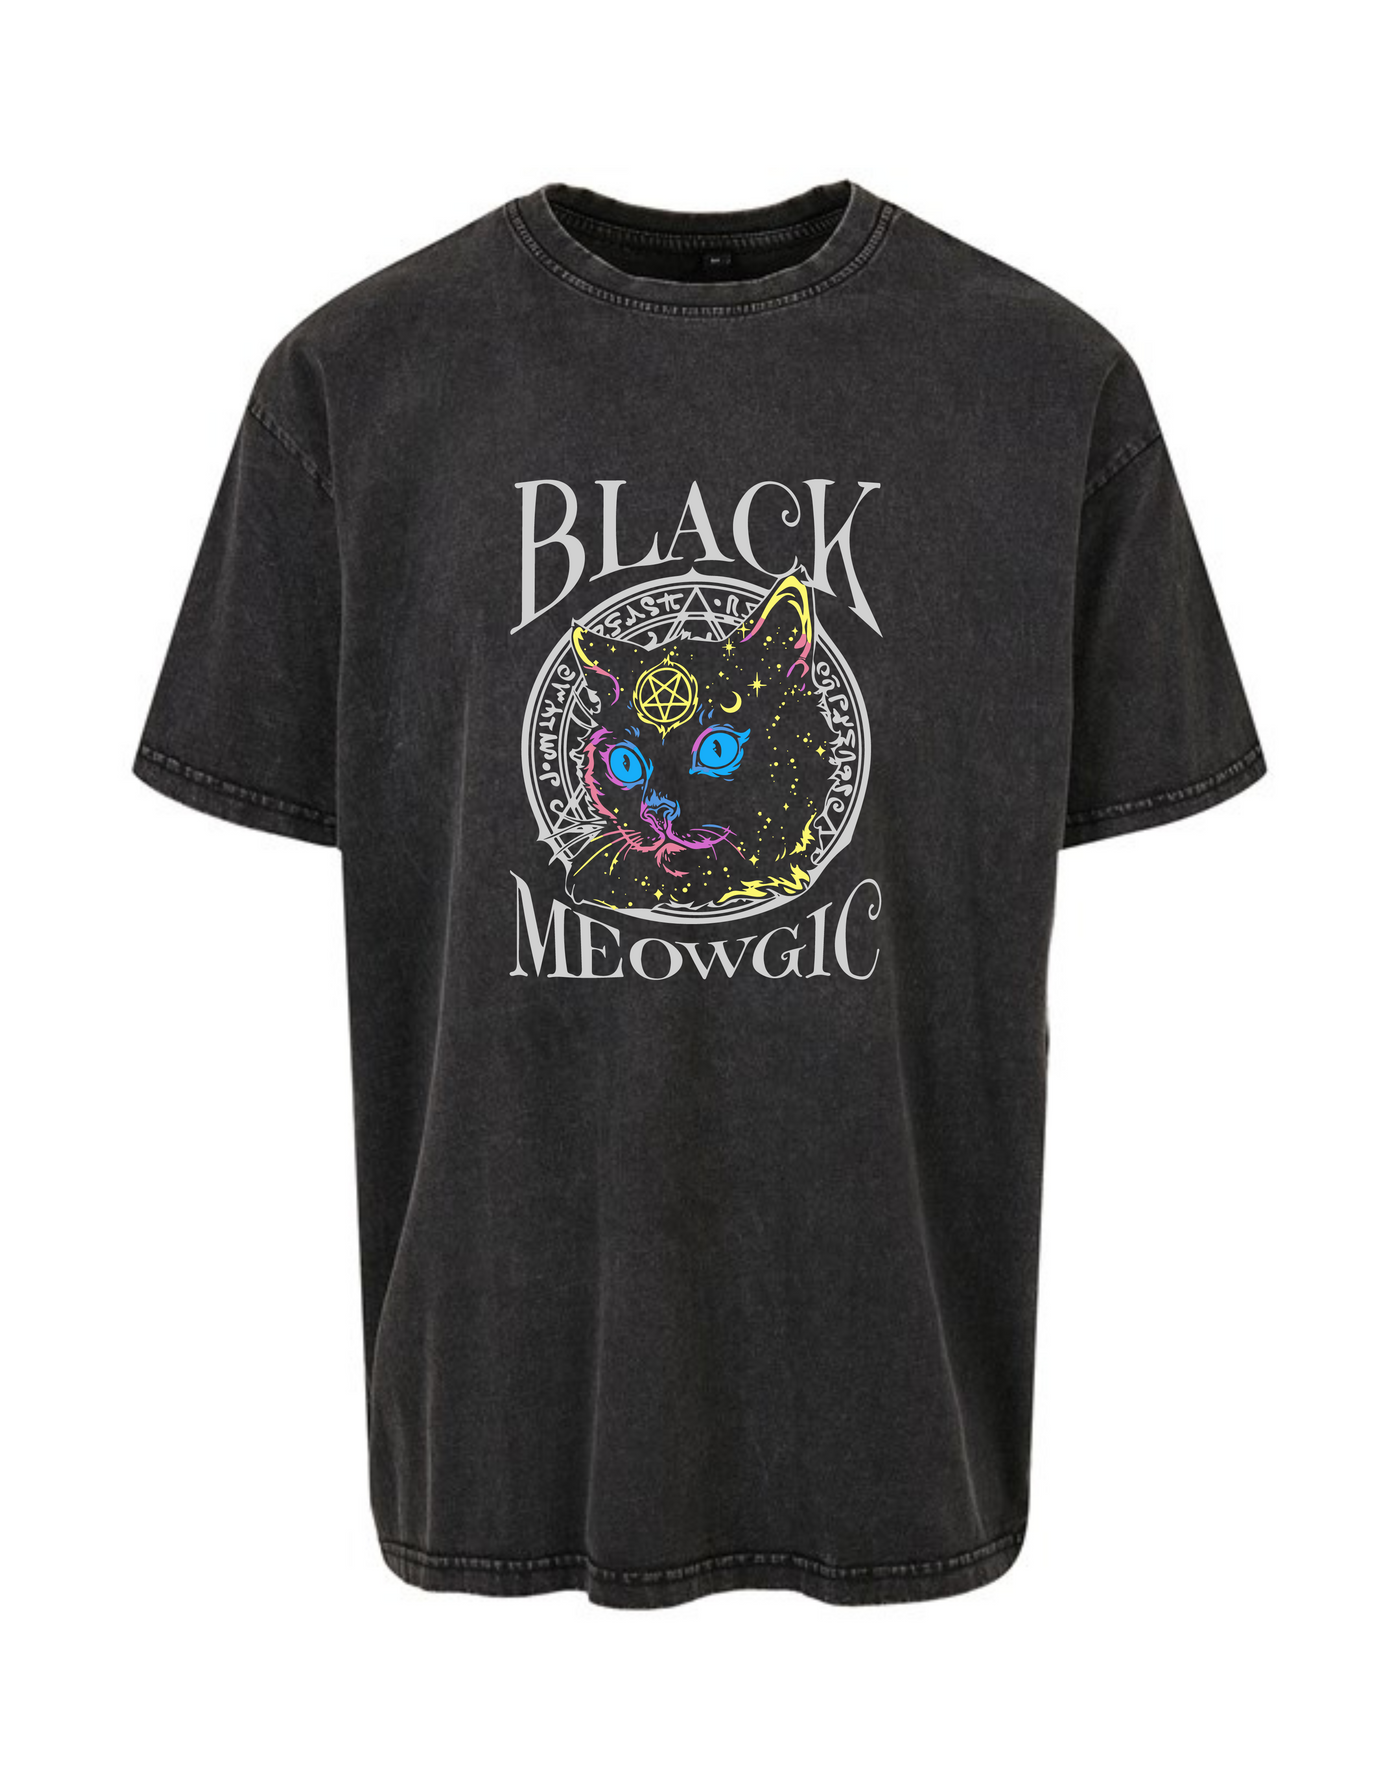 Black "Black Meowgic" Unisex Acid Wash T-Shirt